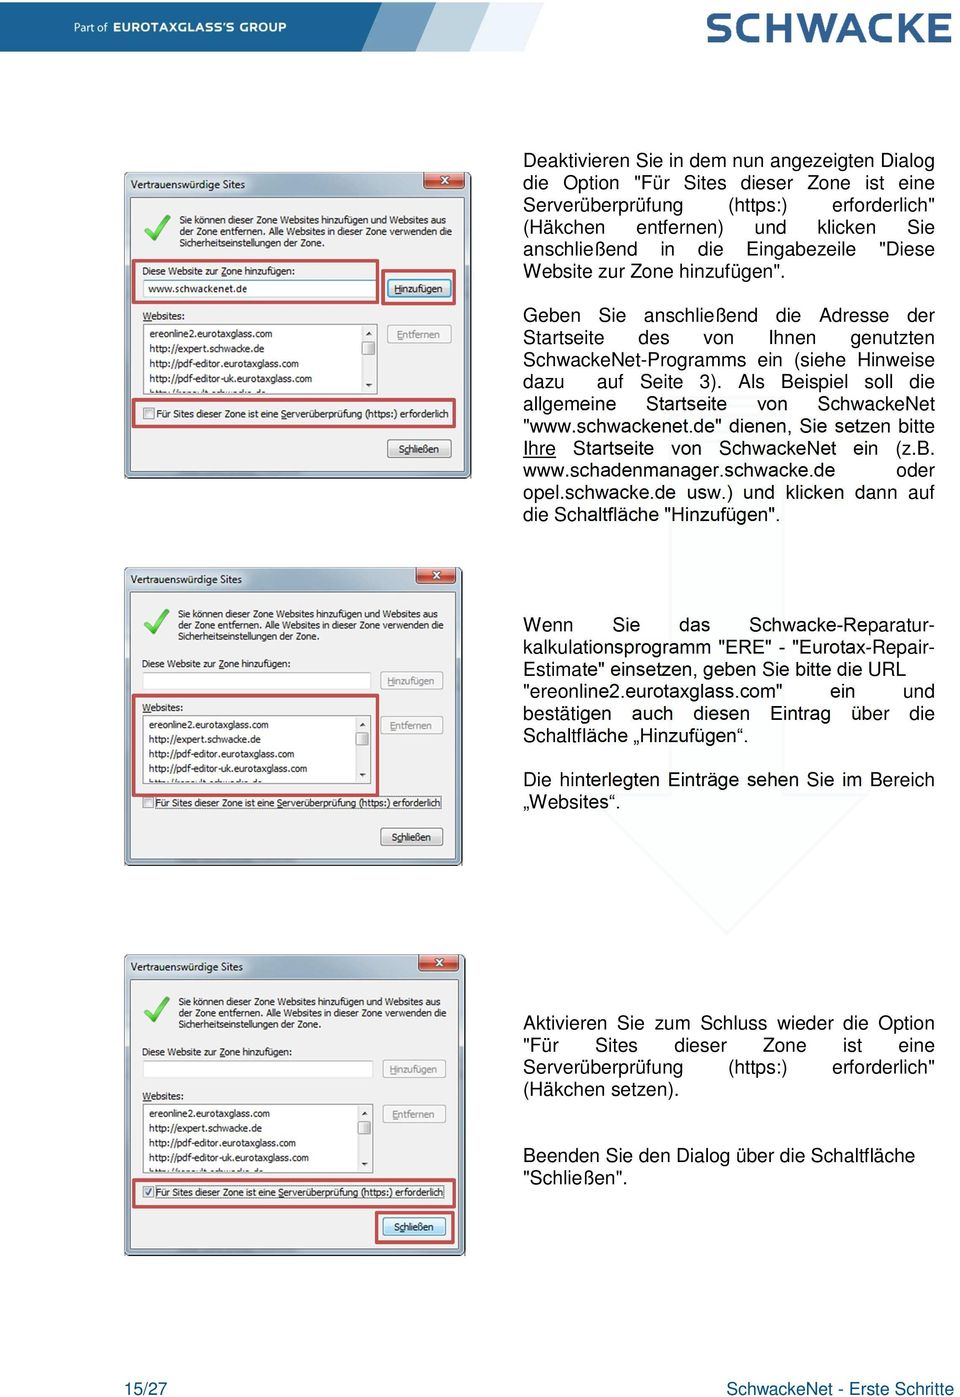 Als Beispiel soll die allgemeine Startseite von SchwackeNet "www.schwackenet.de" dienen, Sie setzen bitte Ihre Startseite von SchwackeNet ein (z.b. www.schadenmanager.schwacke.de oder opel.schwacke.de usw.